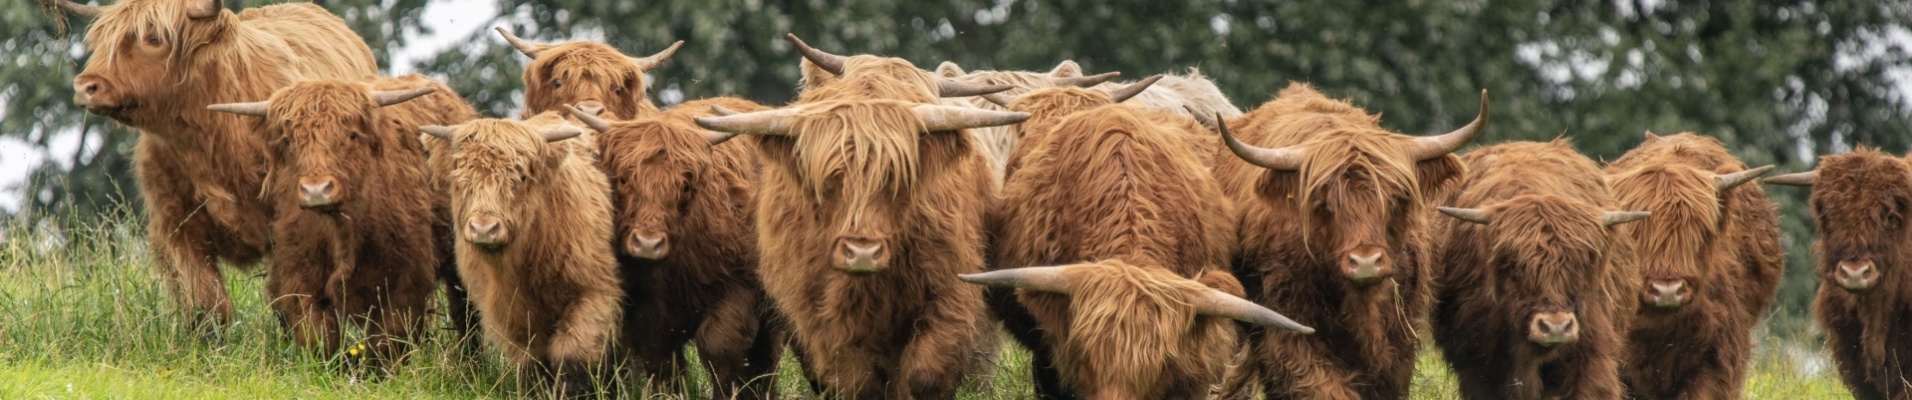 troupeau de vaches des highlands